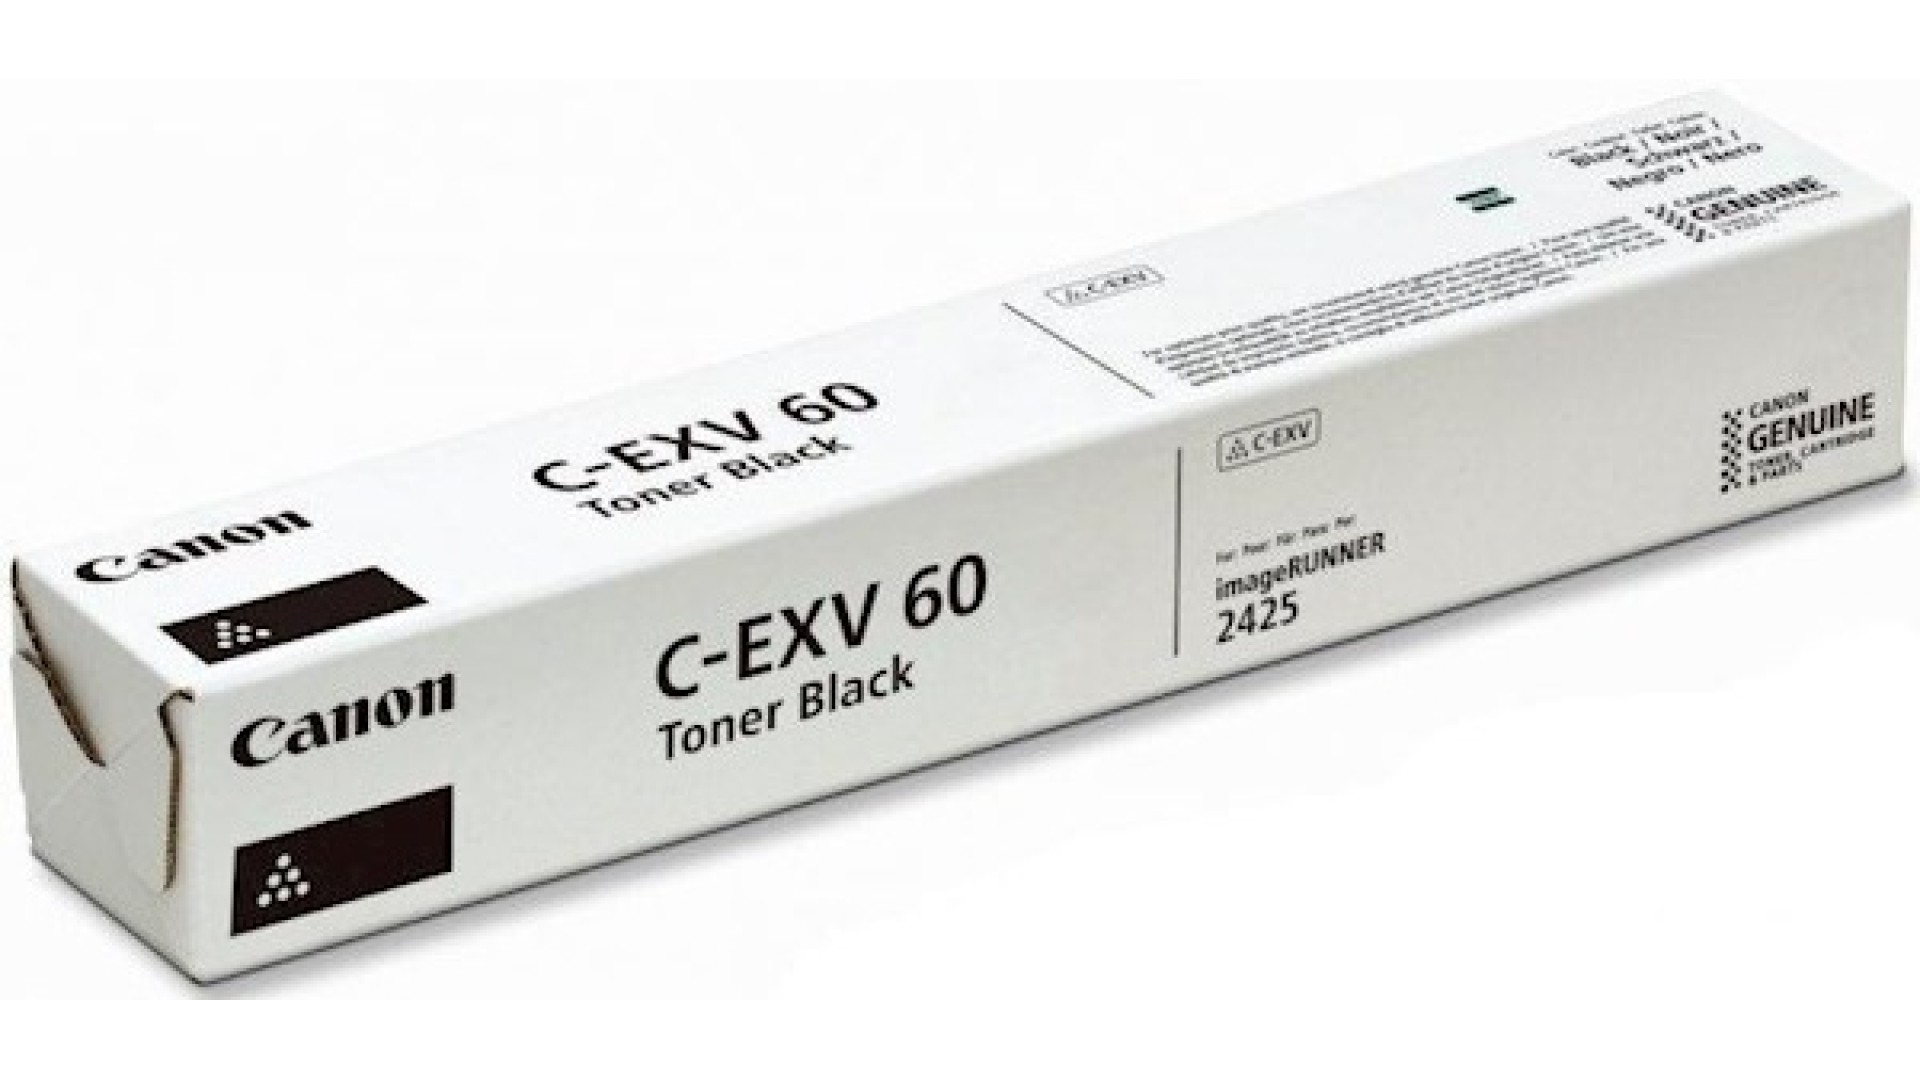 ტონერი Canon  C-EXV60 Toner cartridge  black For iR 2425/2425i  (10K Pages)